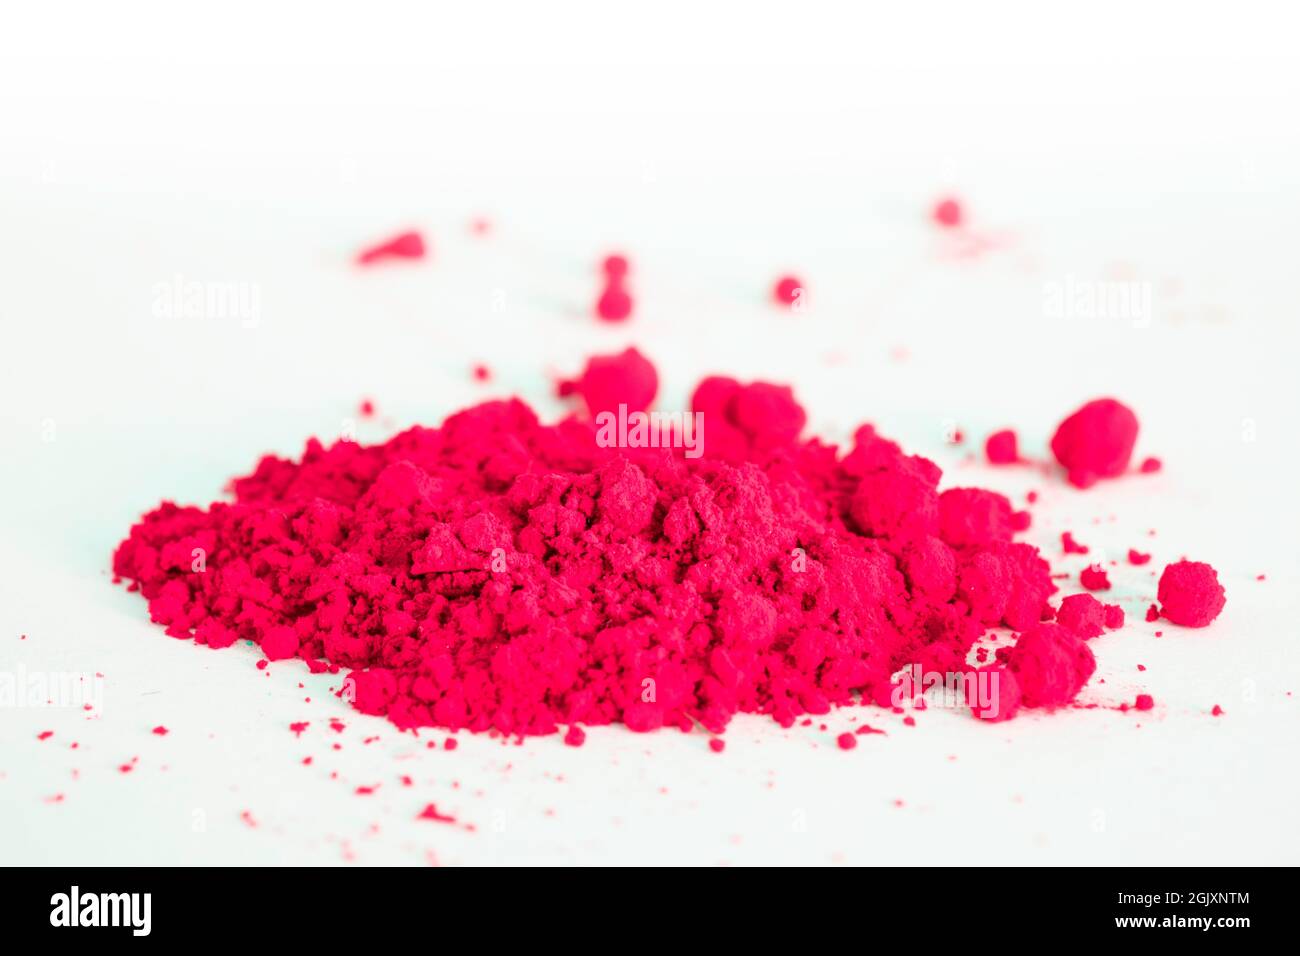 Primer plano de una porción de pigmento rojo aislado sobre blanco. El  pigmento se puede utilizar como base para maquillaje o mezclado con aceite  de linaza para hacer pintura al aceite Fotografía